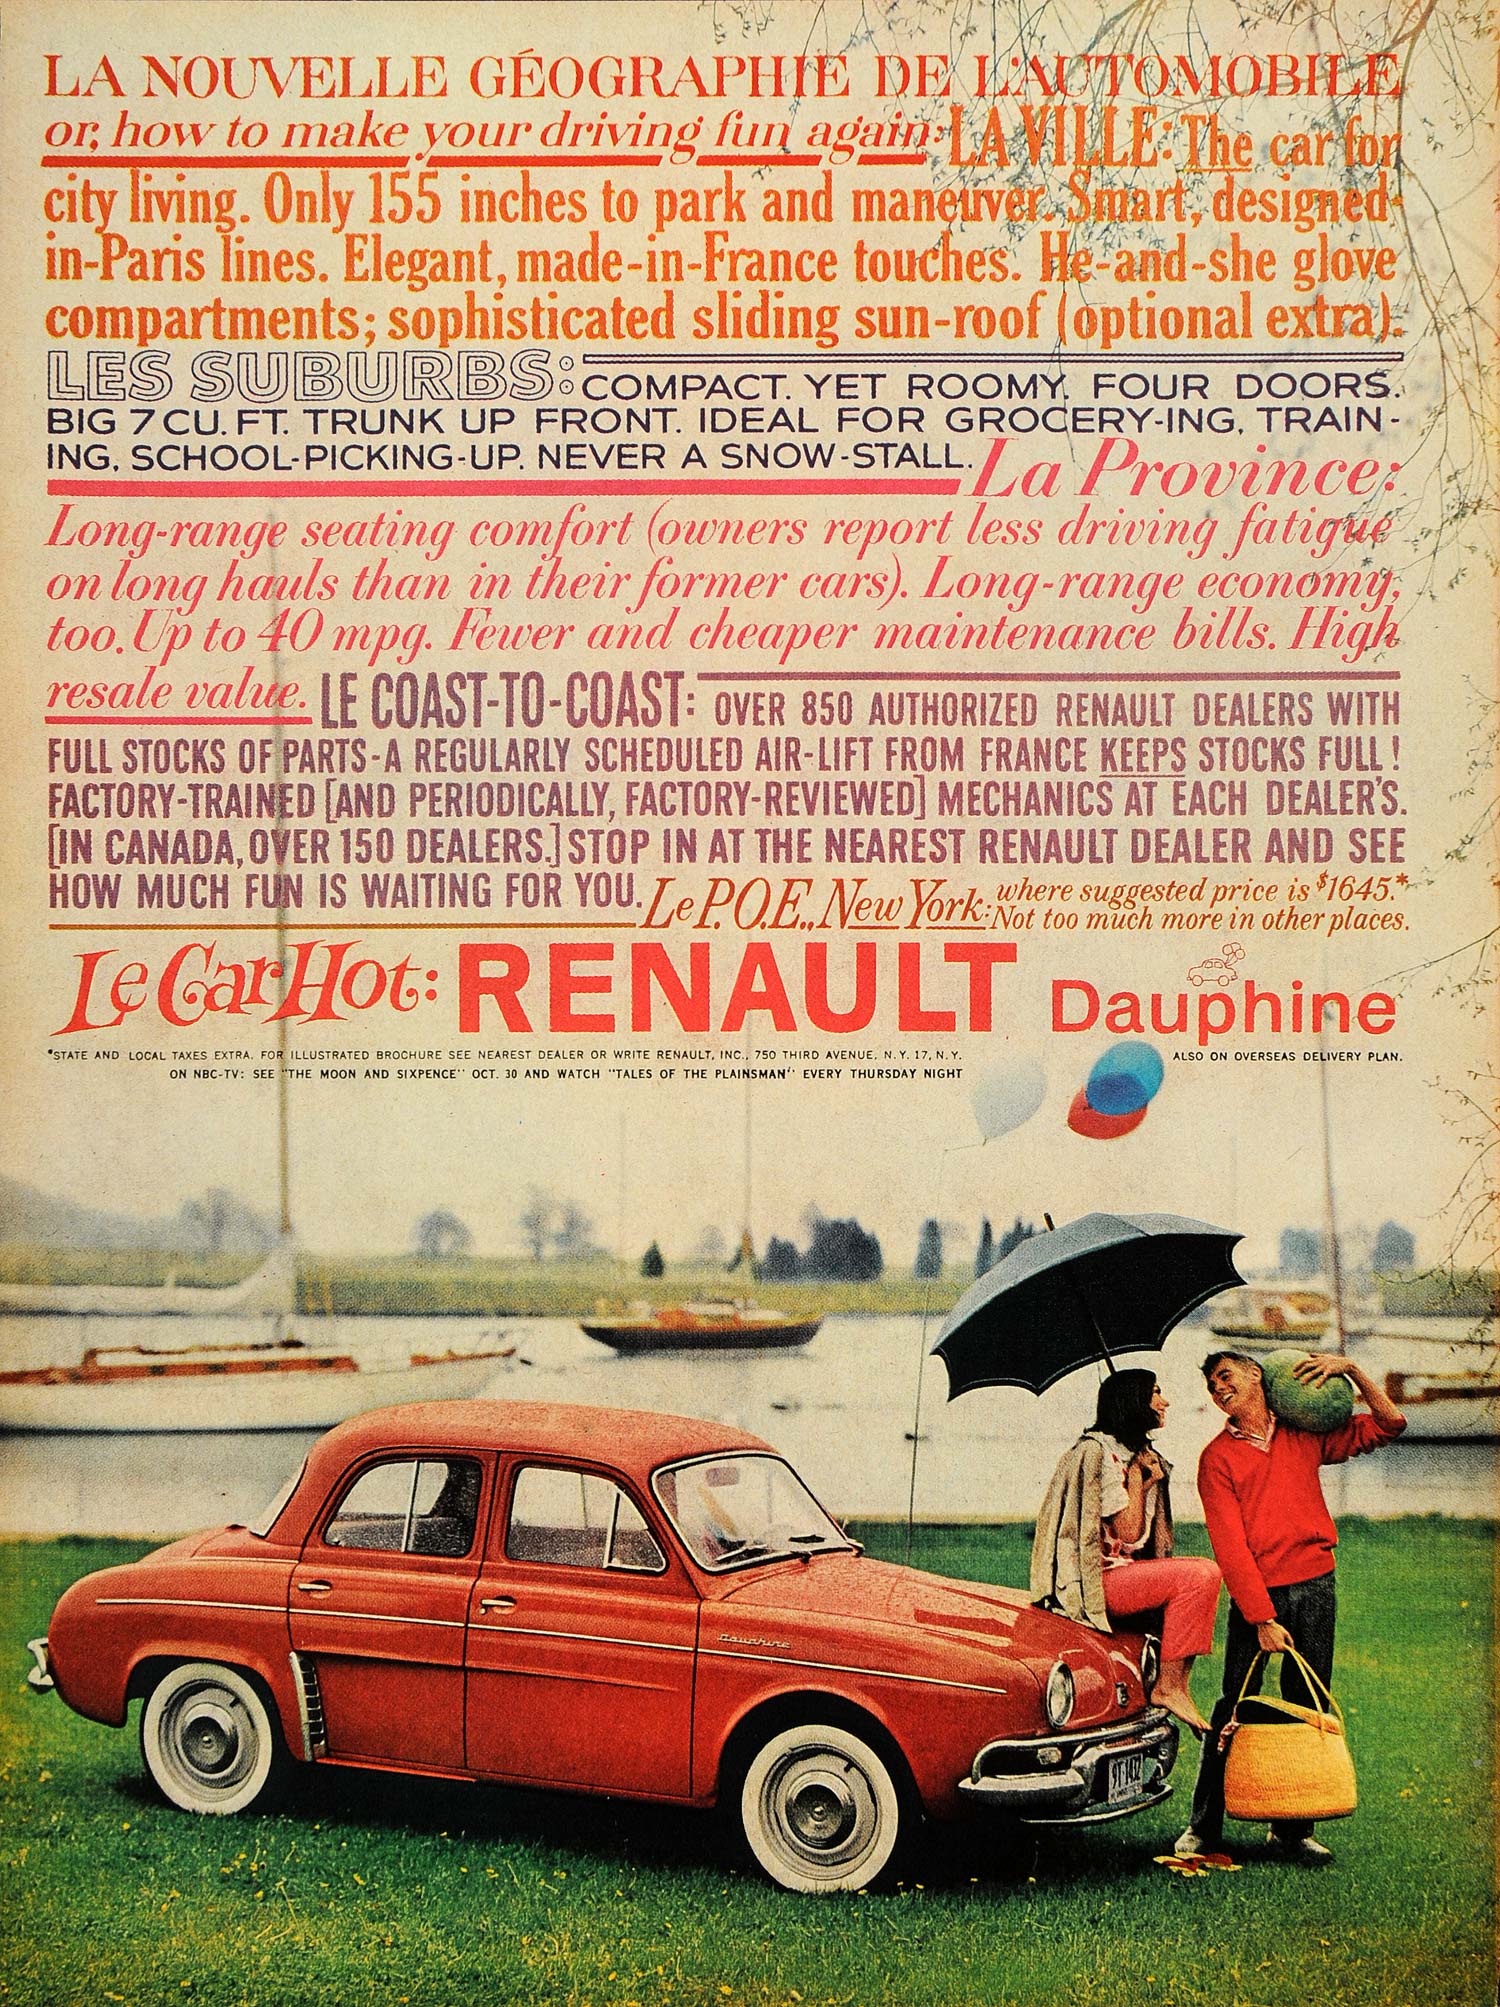 1959 Ad Renault Dauphine La Ville Les Suburbs Province - ORIGINAL TM3